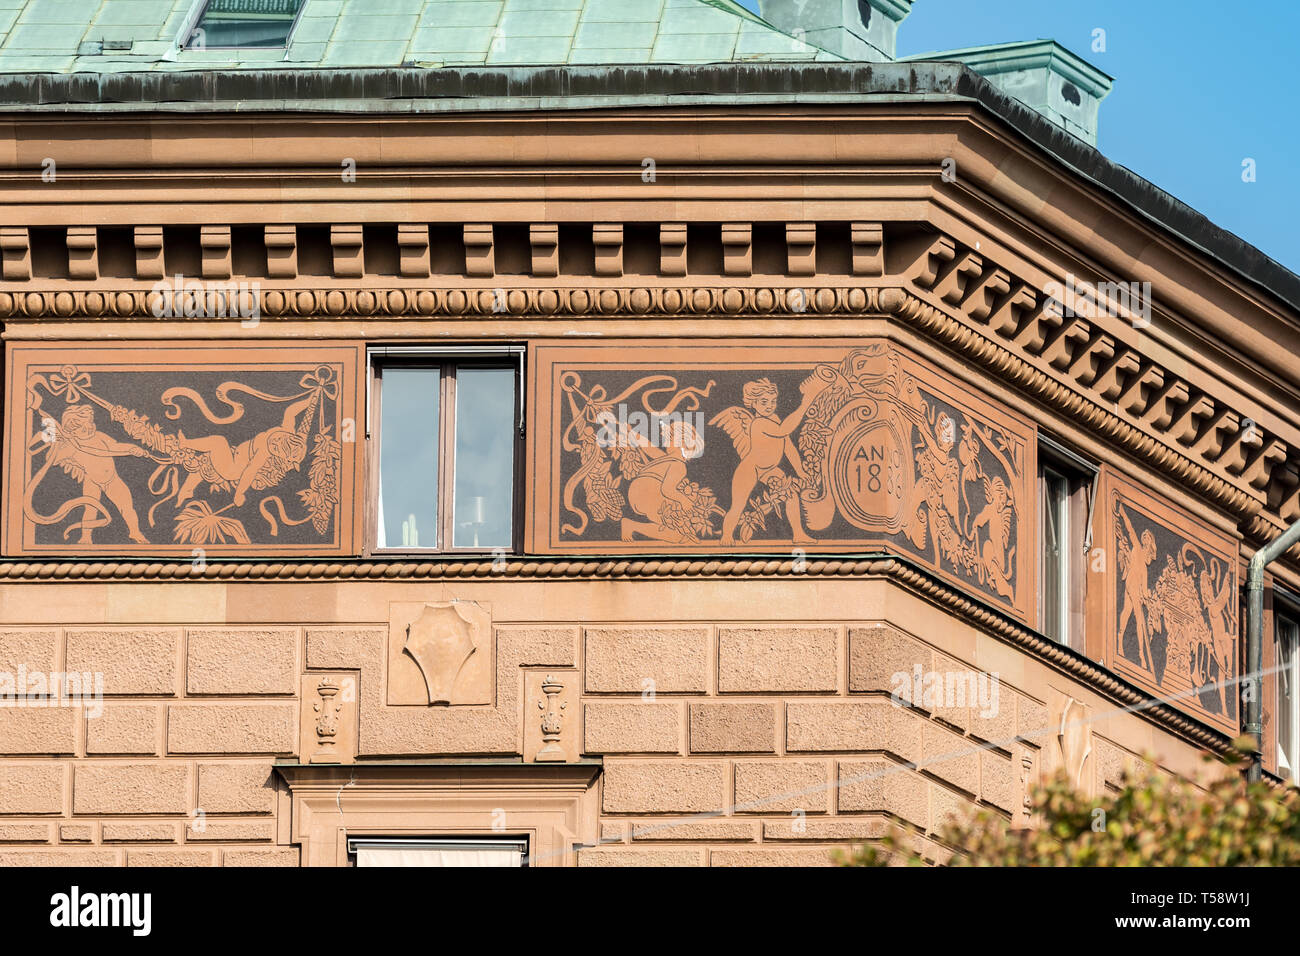 Reich verzierten relief Dekoration rund um den oberen Teil Nr. 19 Strandvägen, dem ehemaligen Hauptsitz der schwedischen Feuer Versicherung Agentur. Stockfoto